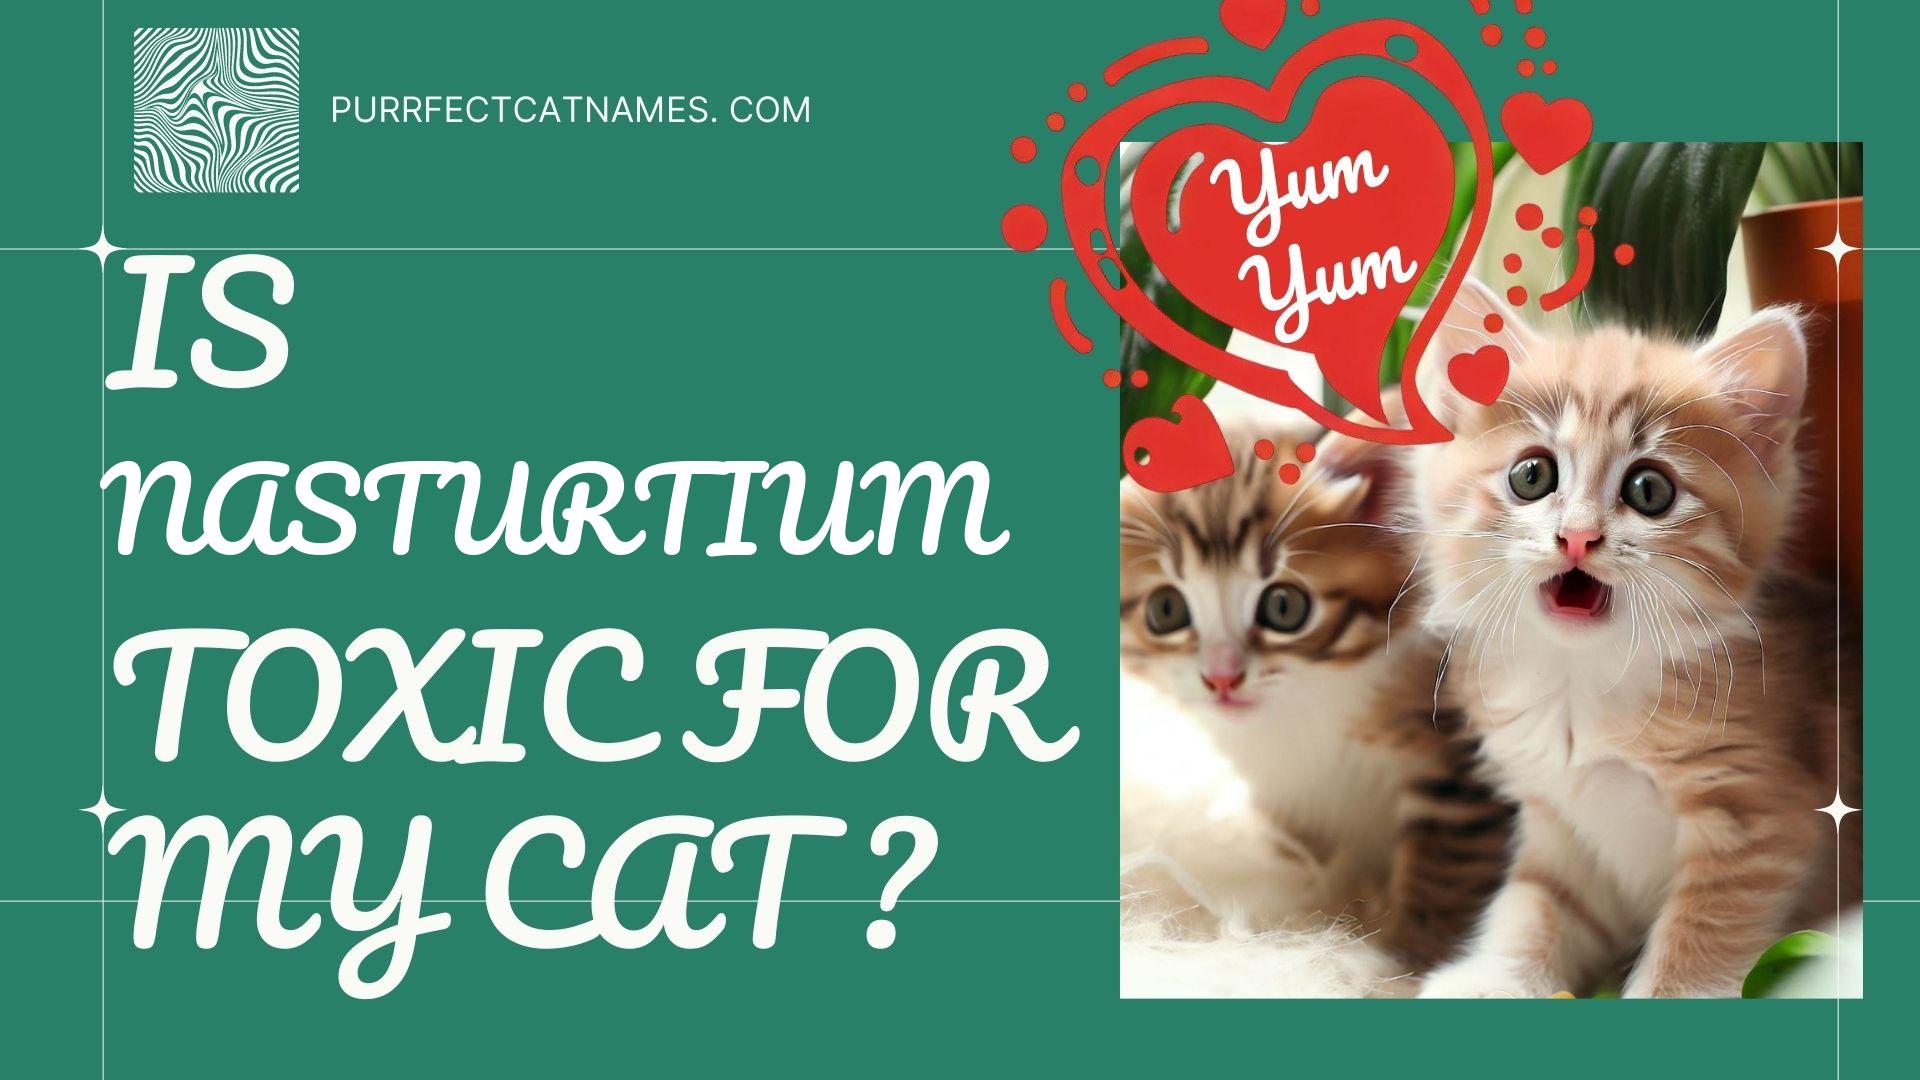 IsNasturtium plant toxic for your cat